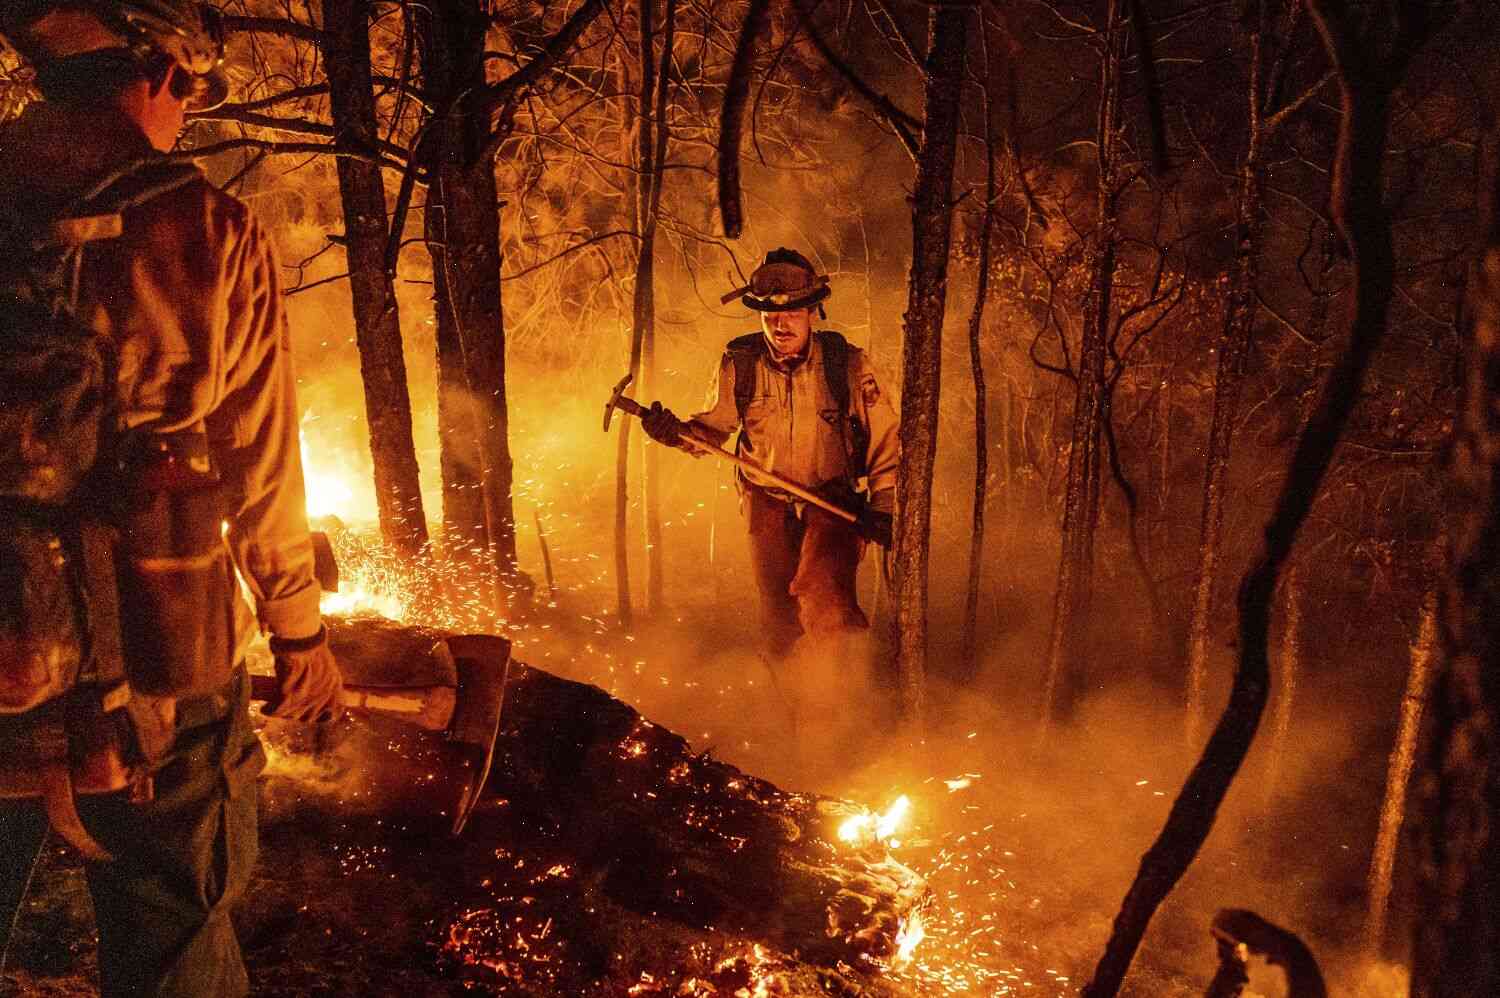 The Sierra Peak Fire is now a massive blaze